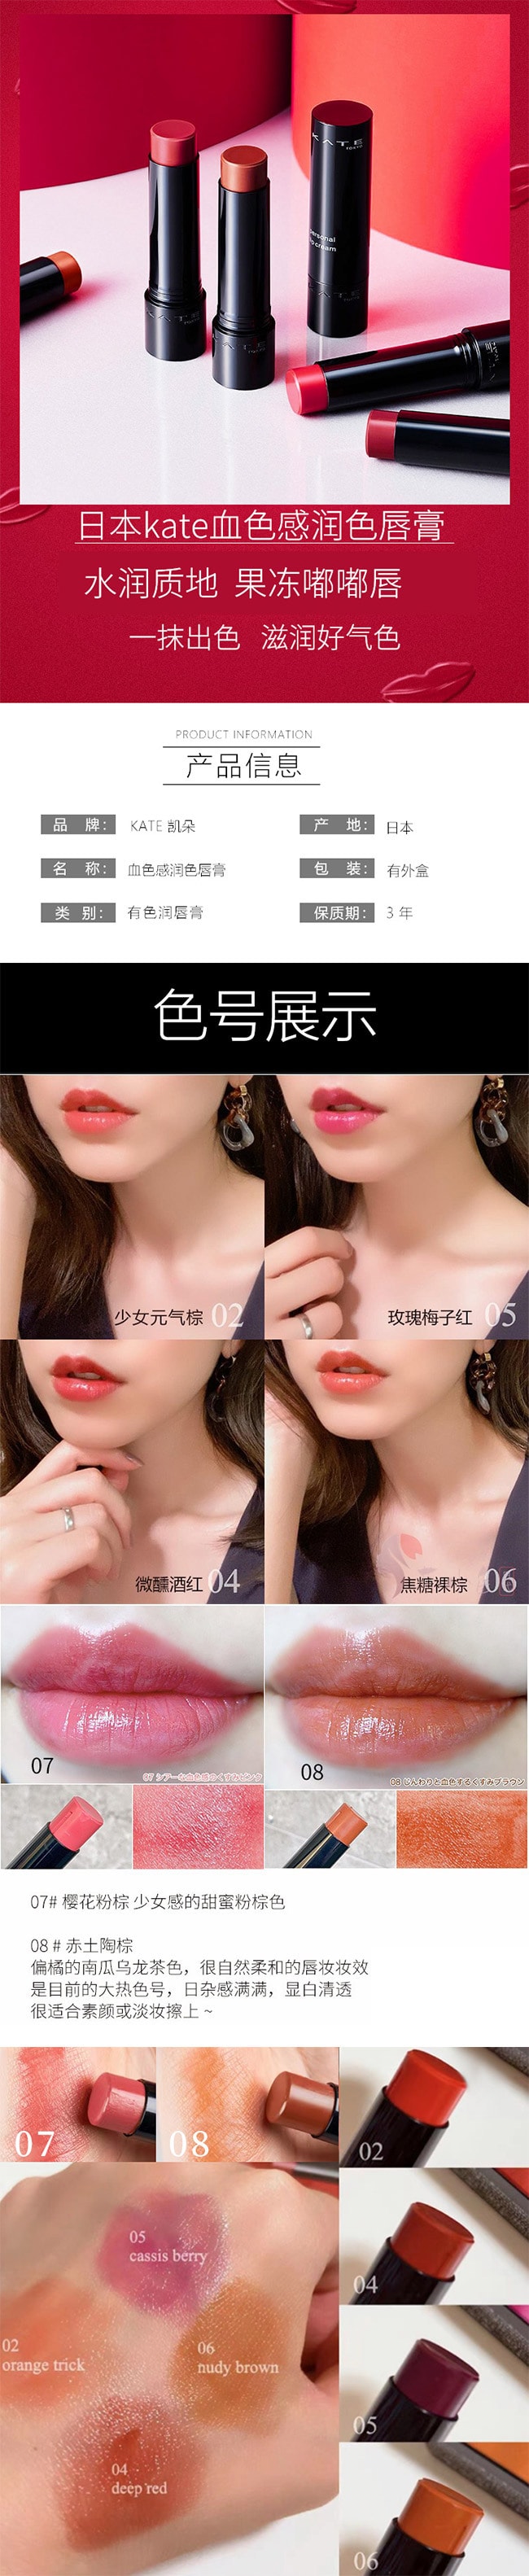 【日本直效郵件】KATE 凱朵 CC有色潤唇膏 3.7g #07